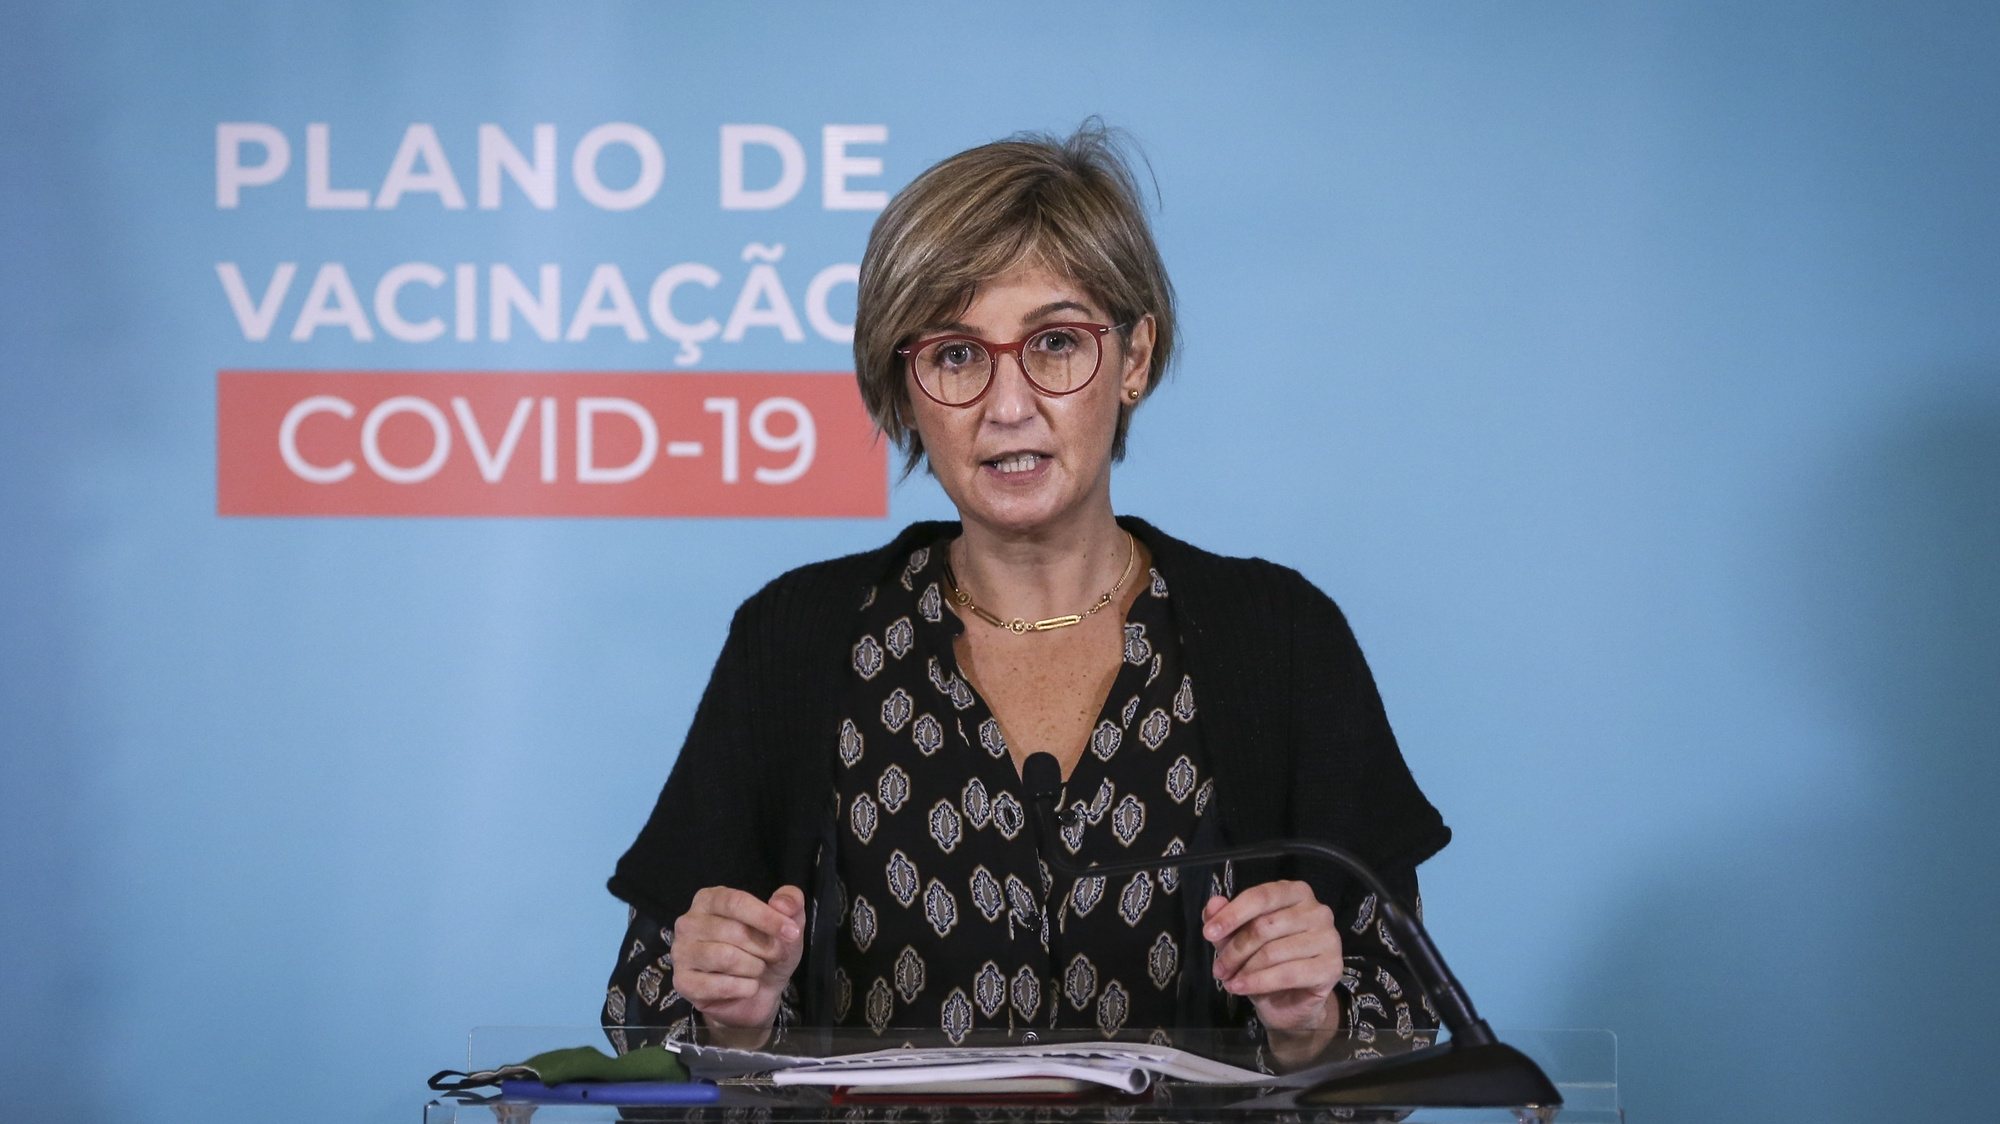 A ministra da Saúde, Marta Temido, discursa após a reunião com o Primeiro Ministro, Antonio Costa, sobre o plano de vacinação COVID-19, no Palácio da Ajuda, em Lisboa, 17 de dezembro de 2020. RODRIGO ANTUNES/LUSA